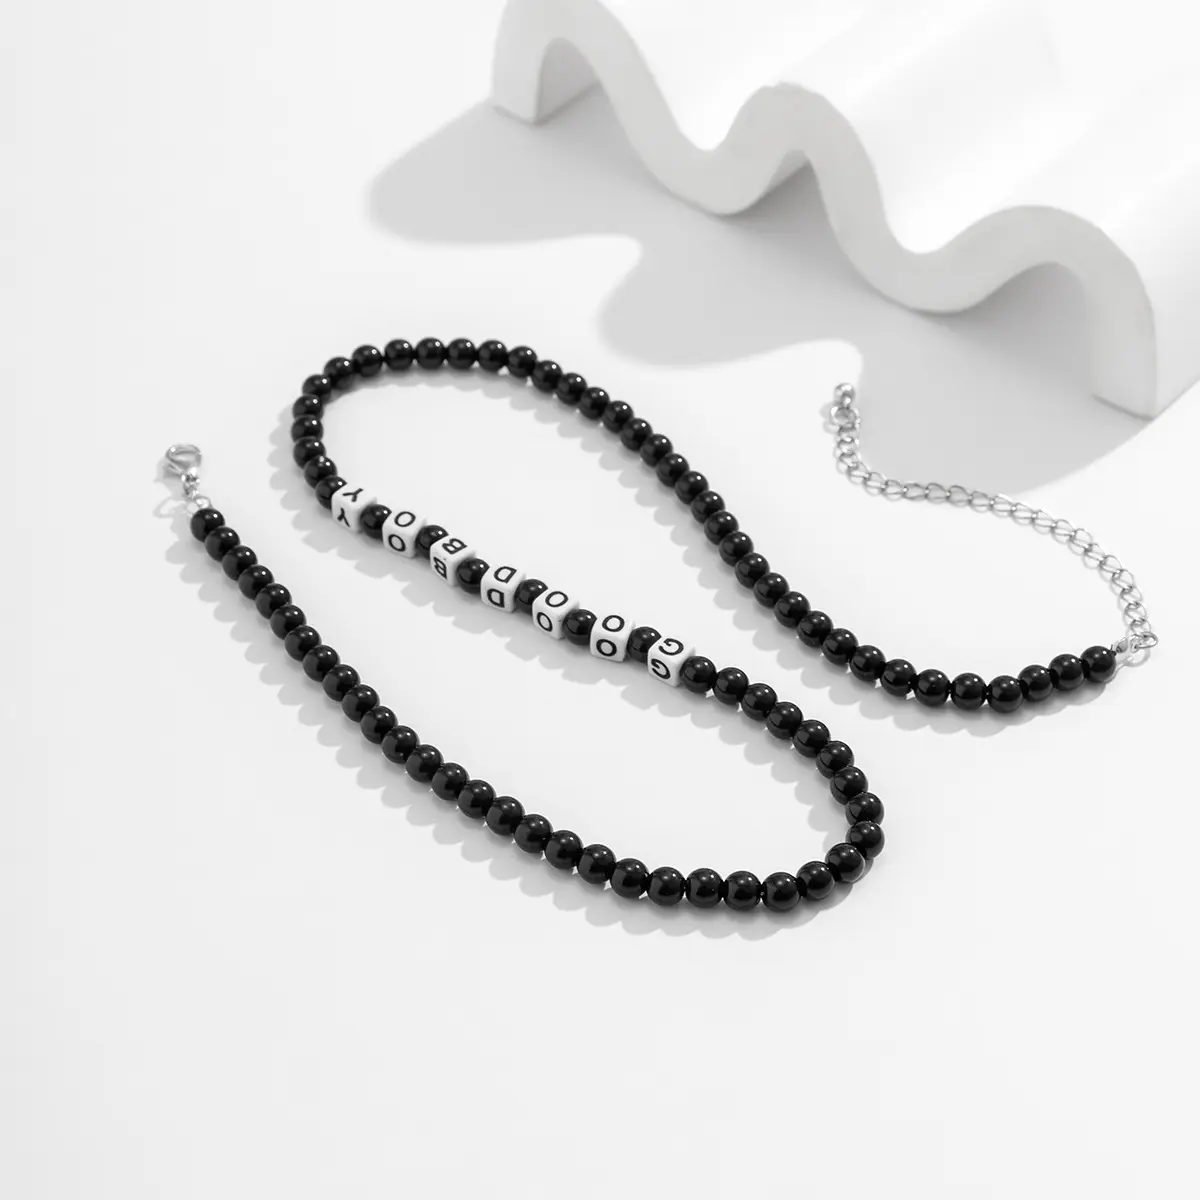 جديد أسود-أزياء الرجال الهيب هوب تصميم شخصي سلسلة طوق الصيف مجوهرات رجالية